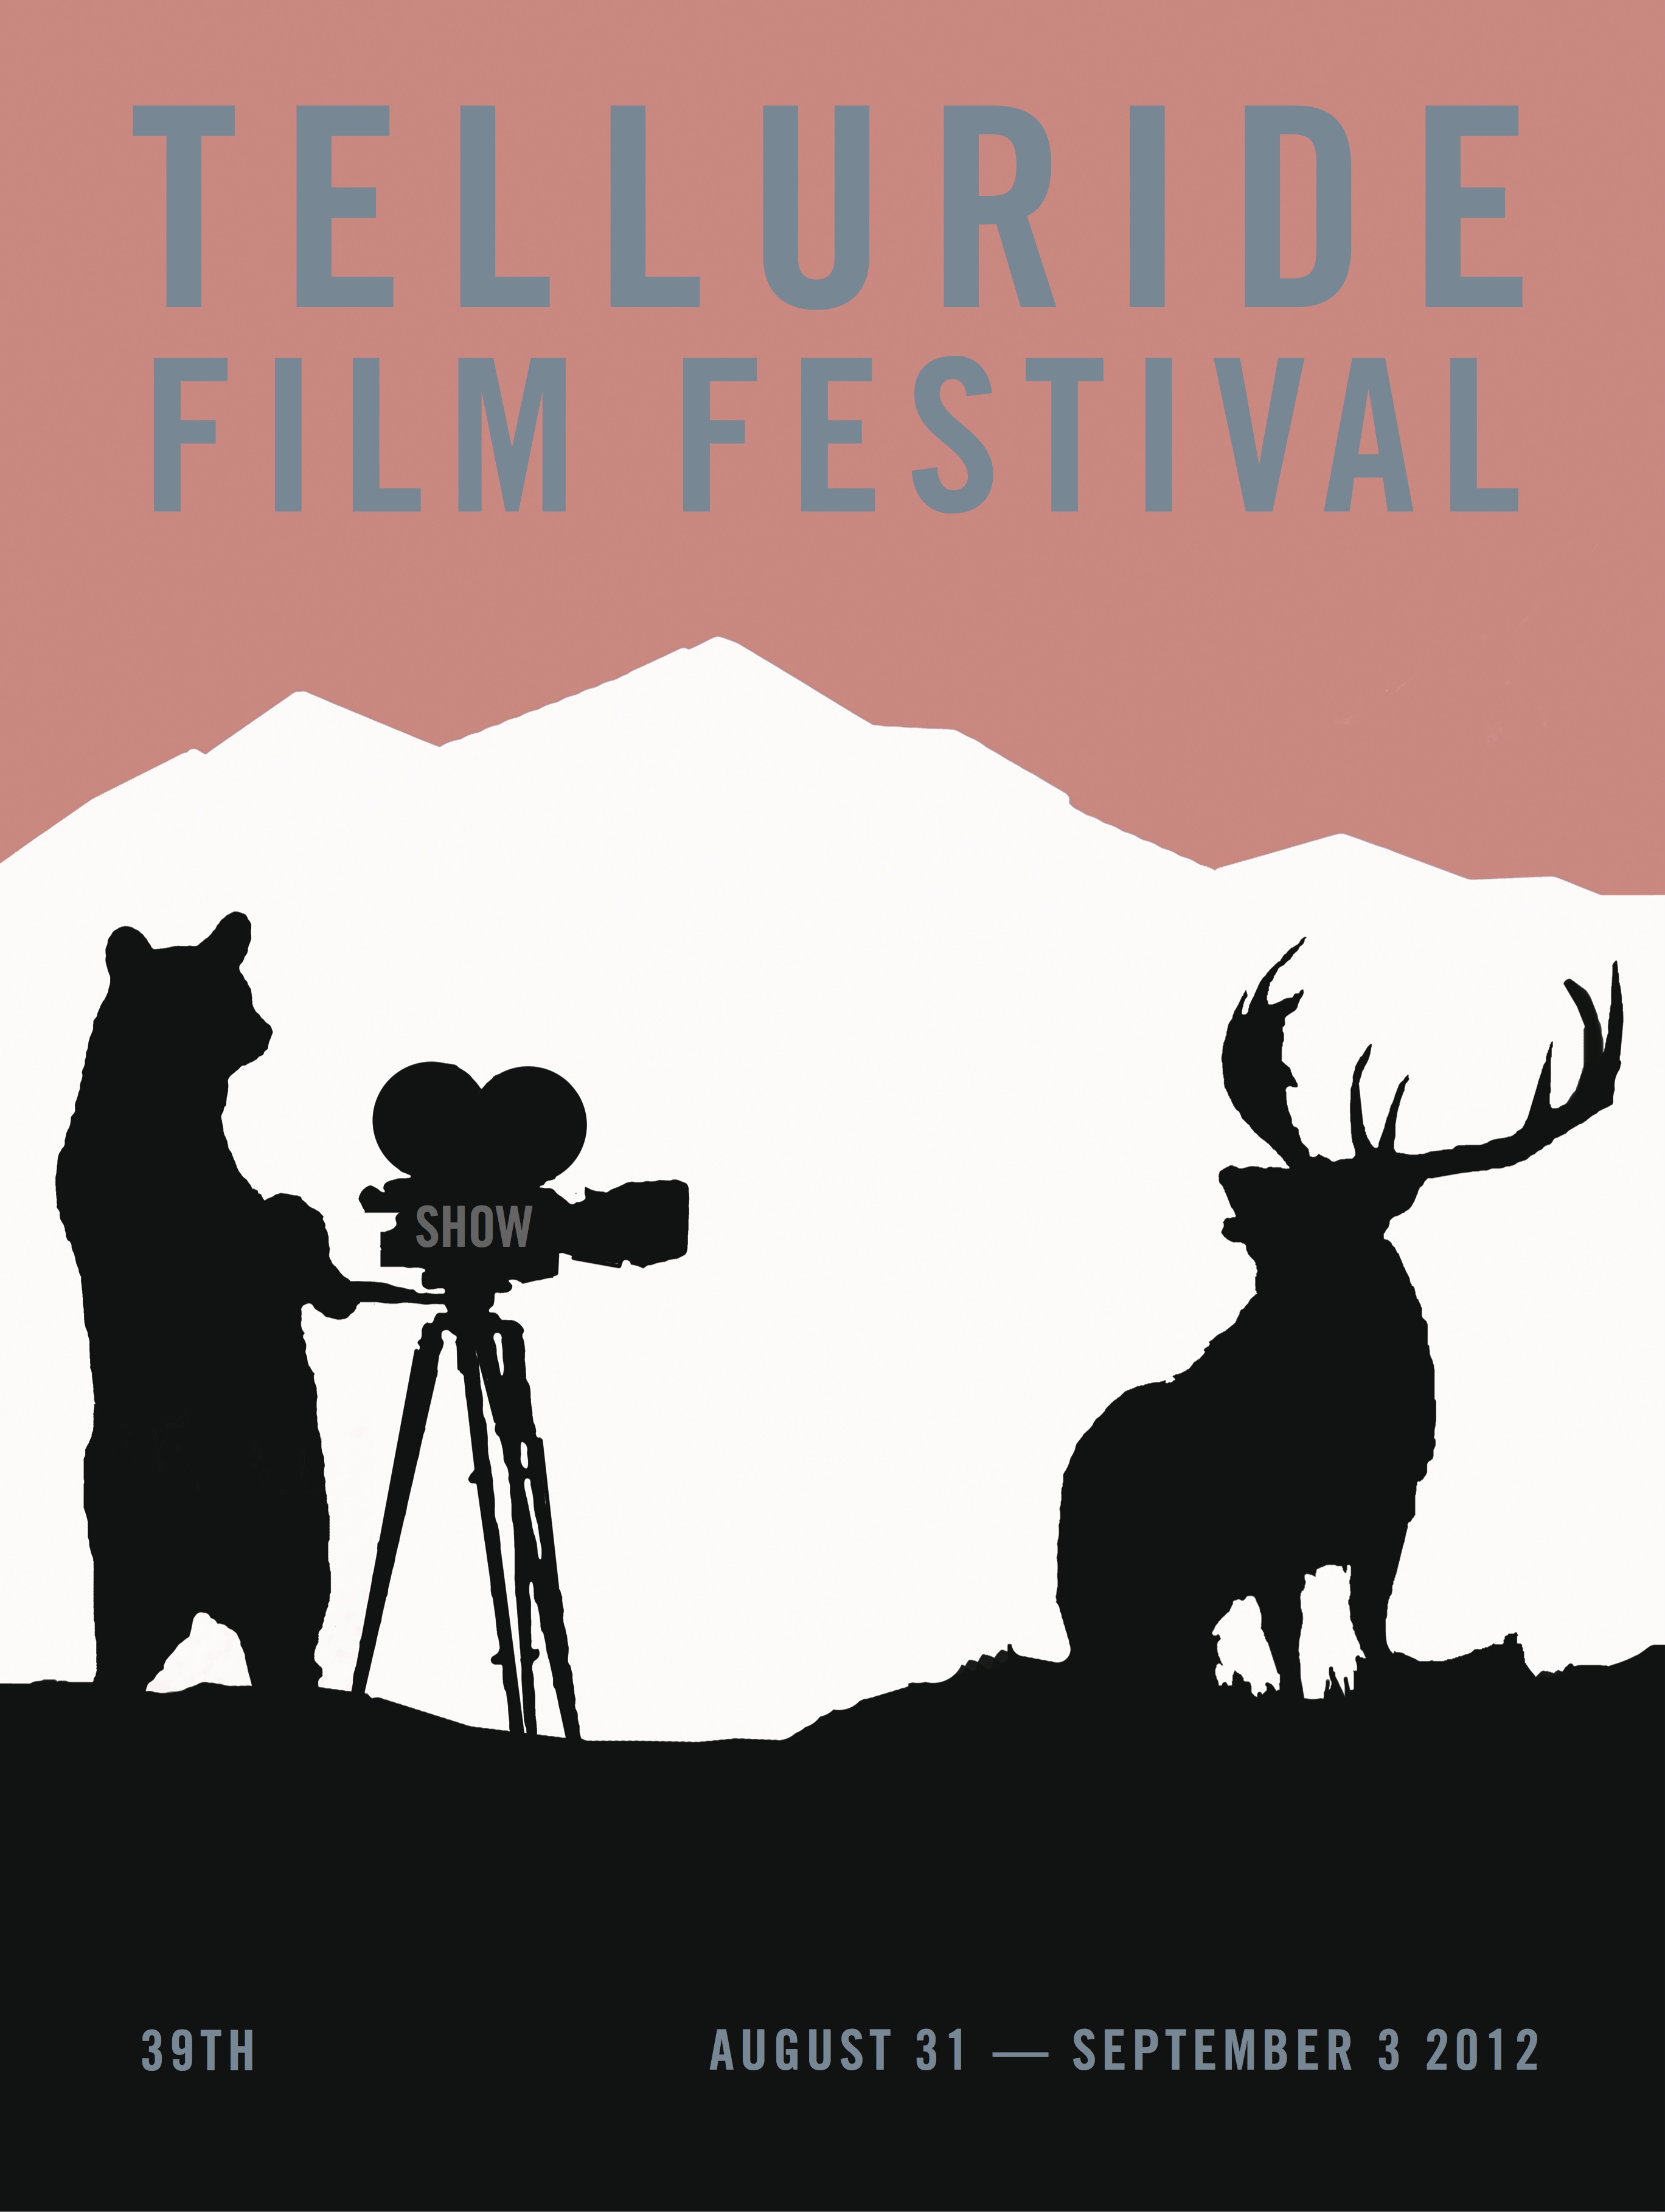 The 39th Annual Telluride Film Festival